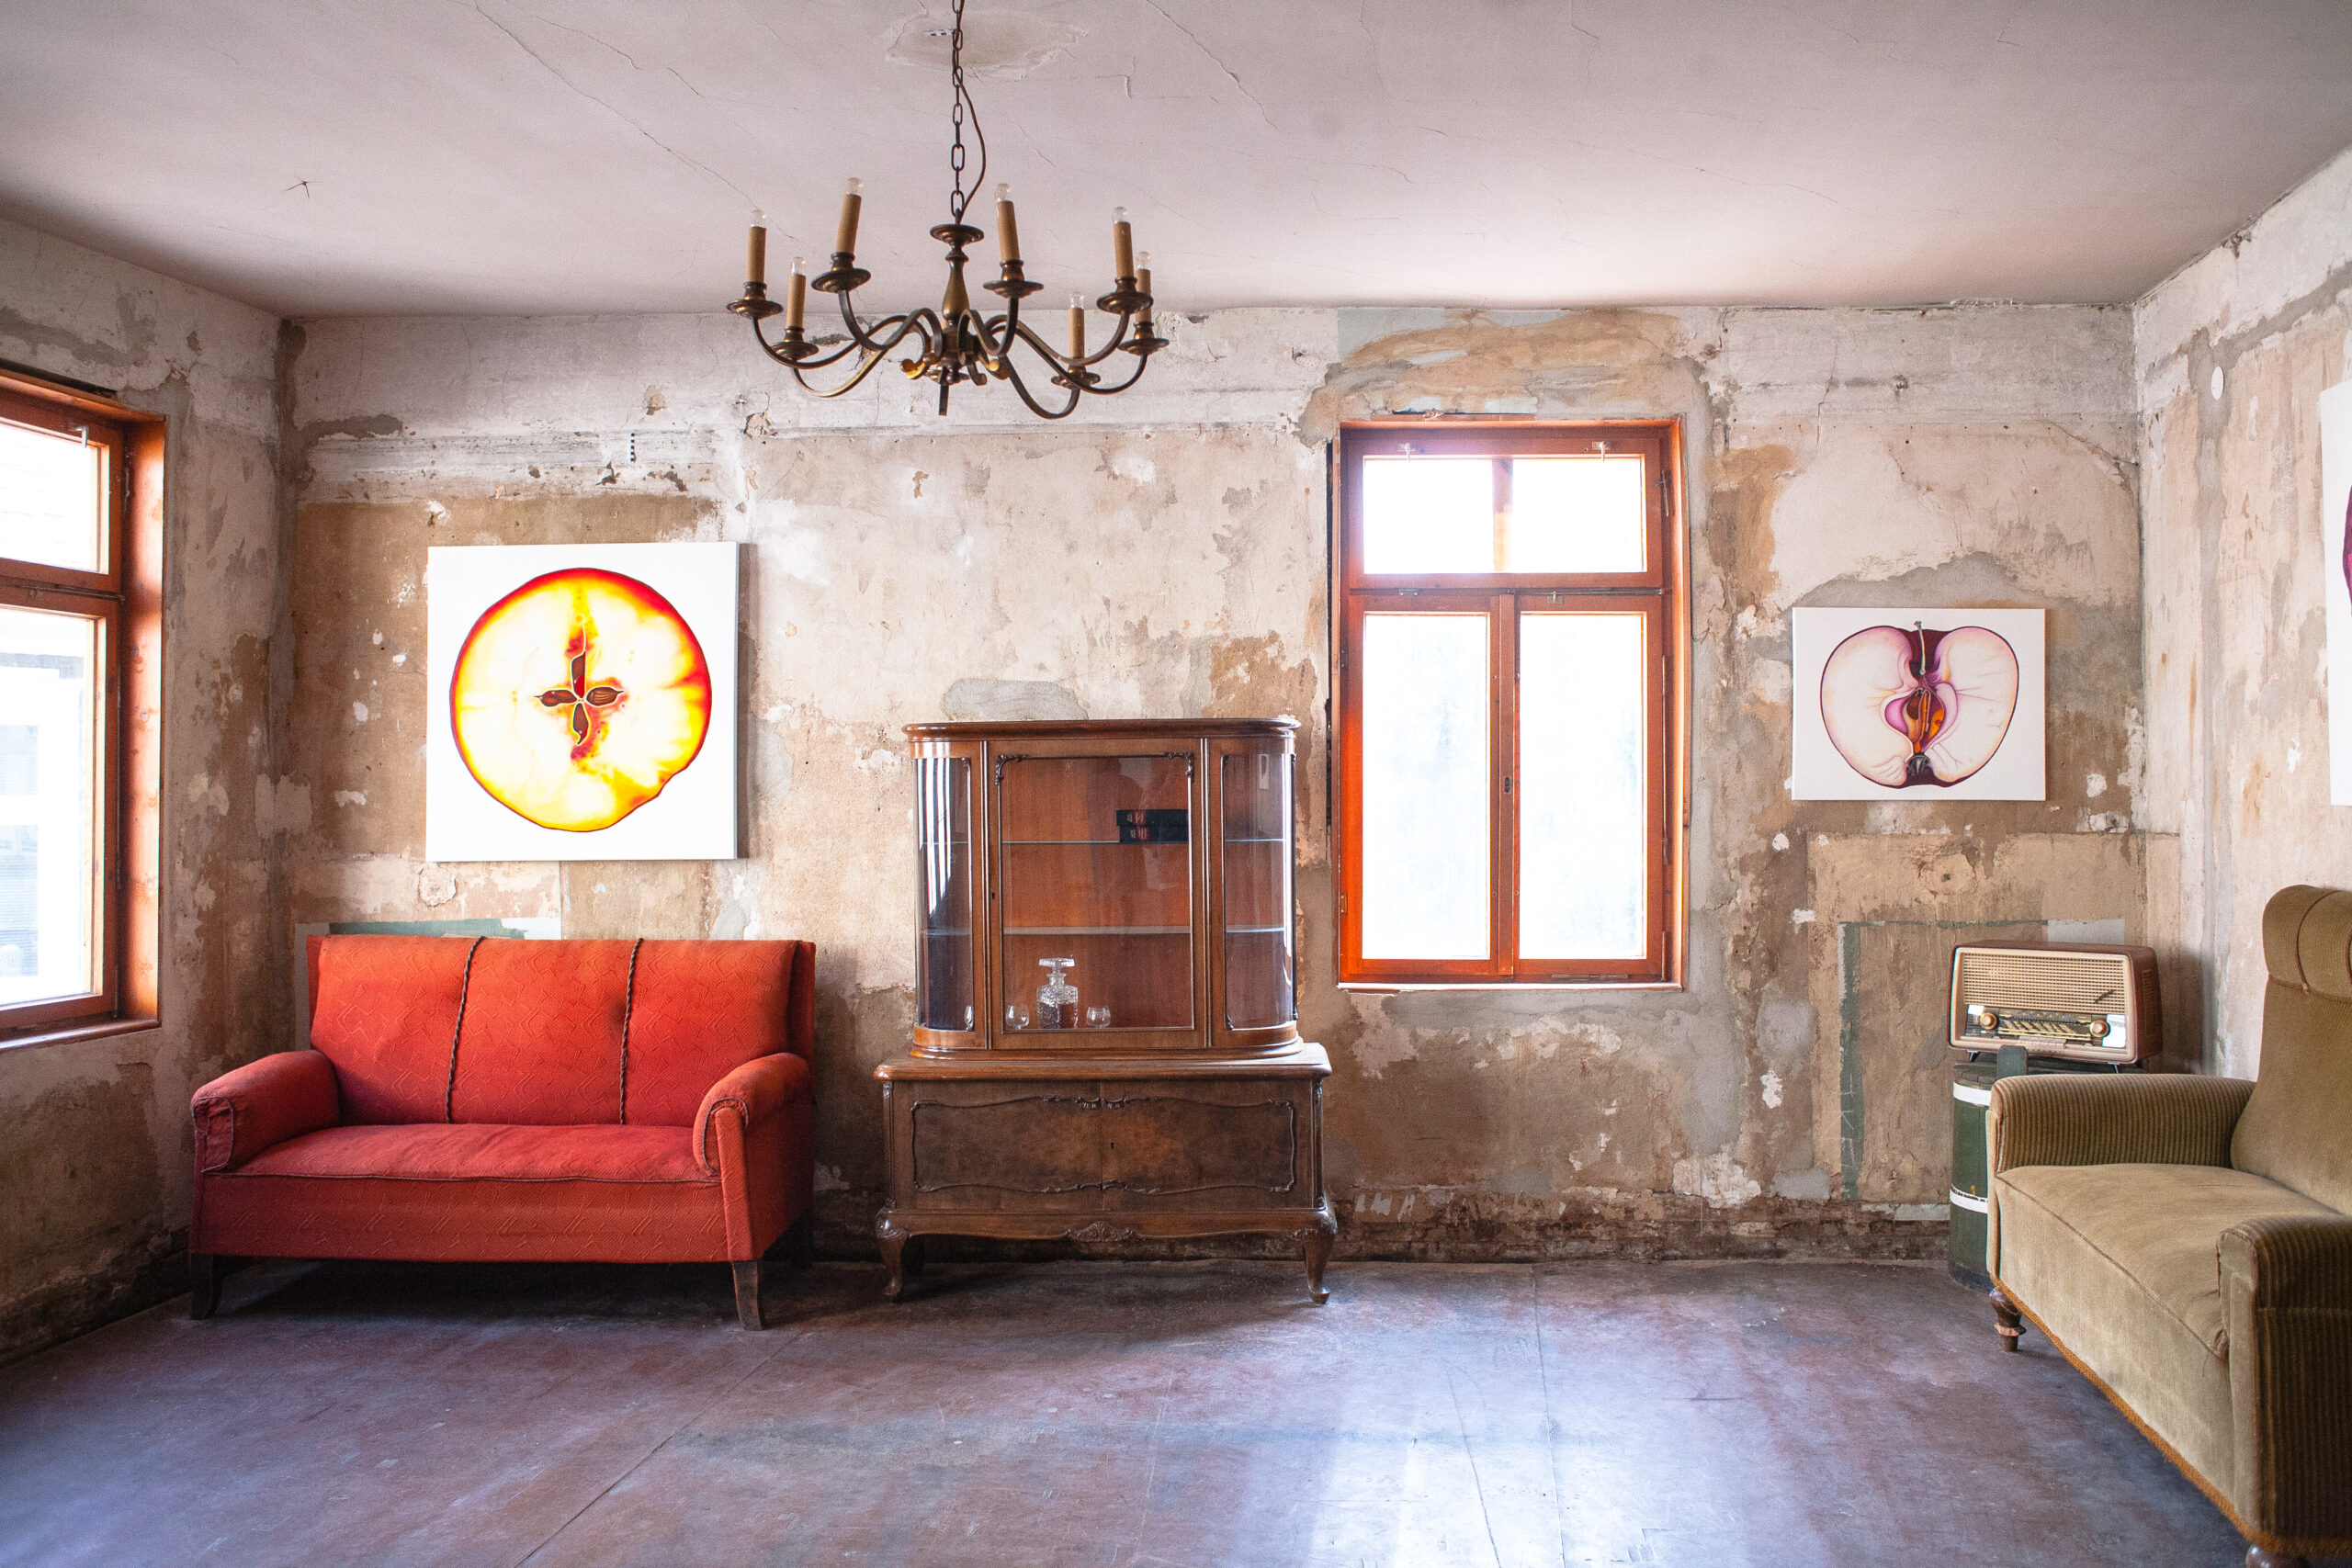 Blick in einen Raum mit einer unverputzten Wand und einem dunklen Holzboden. Links hinten steht ein rotes Sofa, daneben eine alte Holzvitrine. An der Decke hängt ein Kronleuchter. Es hängen zwei künstlerische Darstellungen eines Apfels an der Wand.